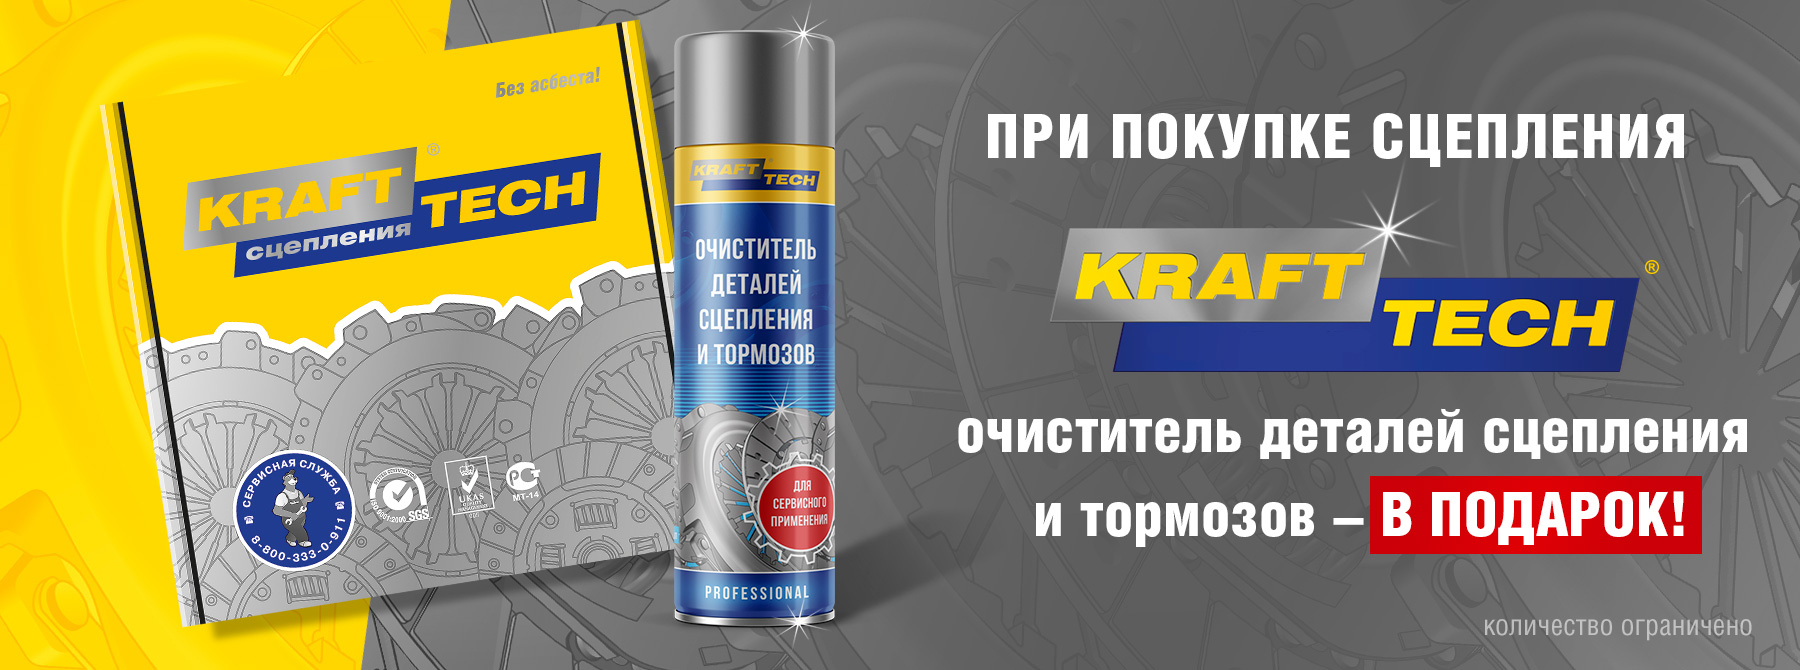 акция Krafttech купите сцепления получите в подарок очиститель тормозов